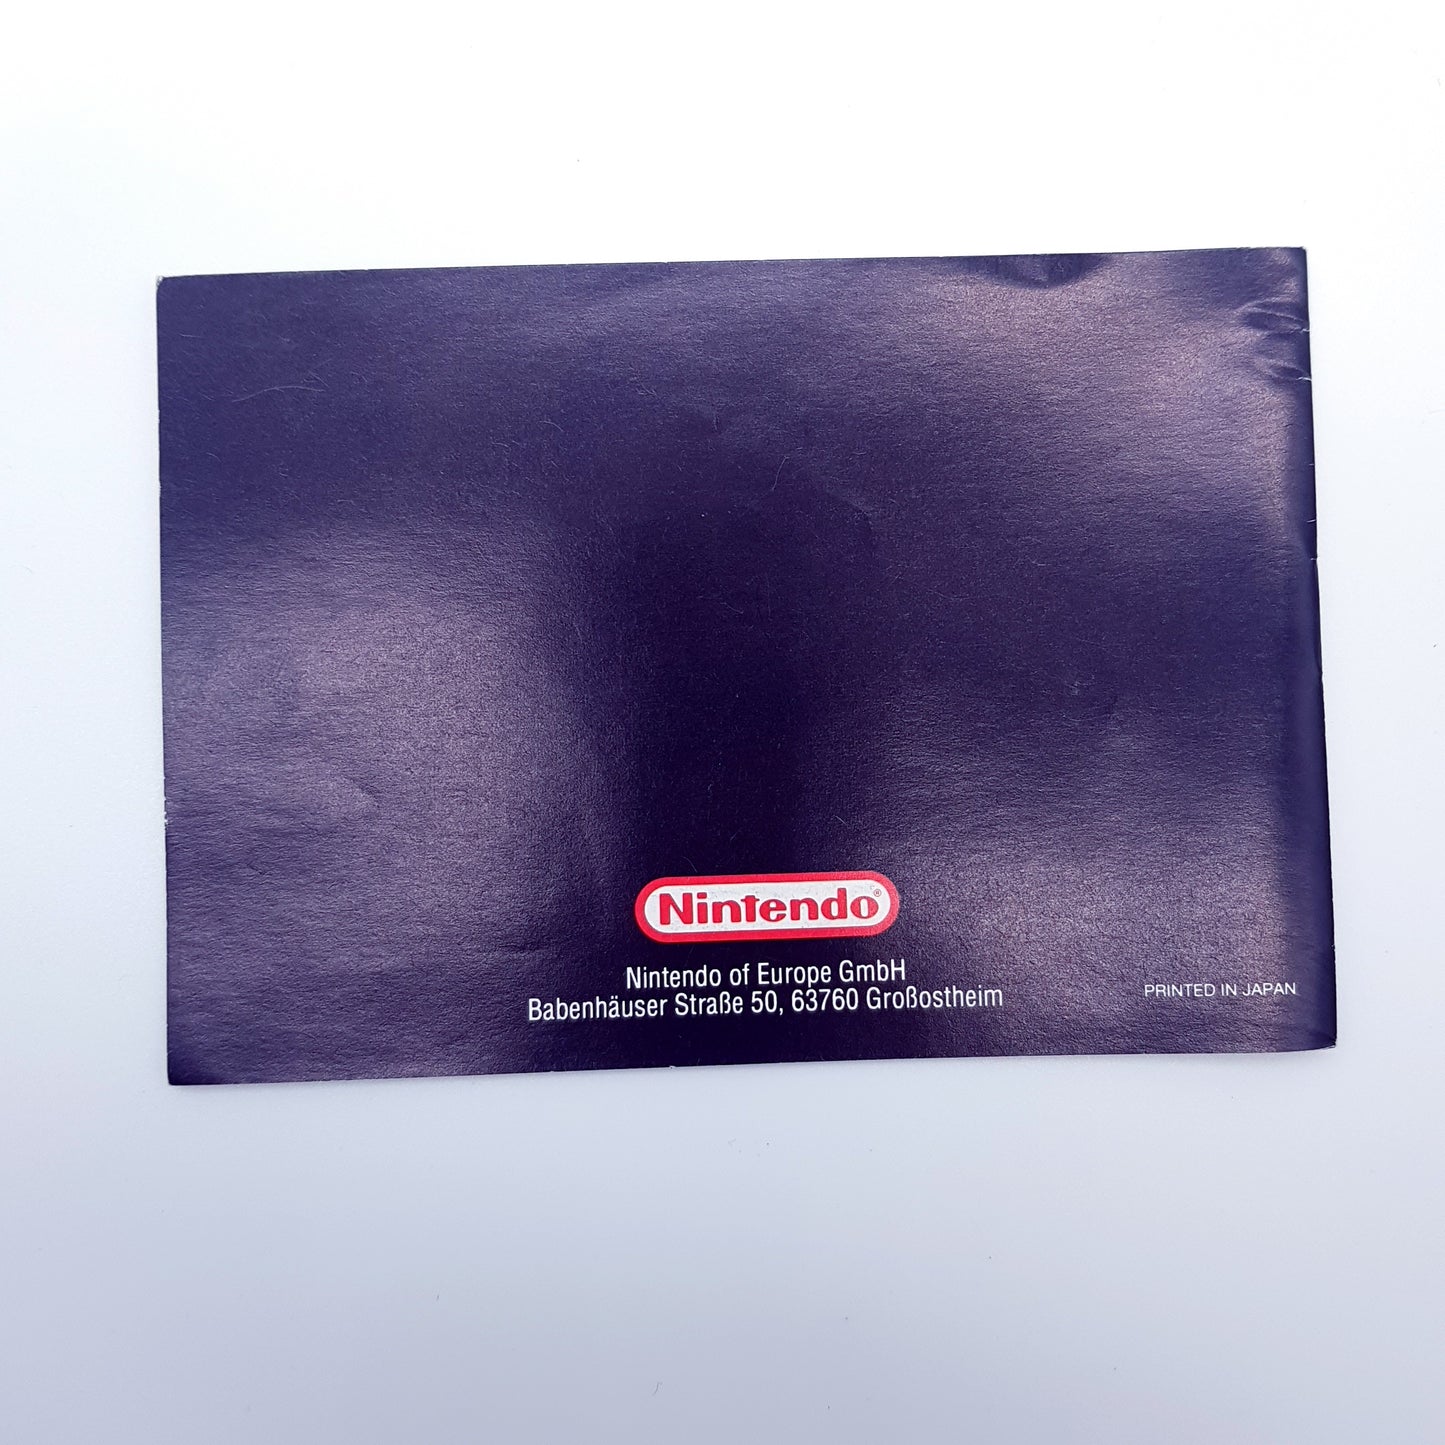 Nintendo Gameboy Konsole mit OVP, Anleitung & Spiel Tetris - gebraucht